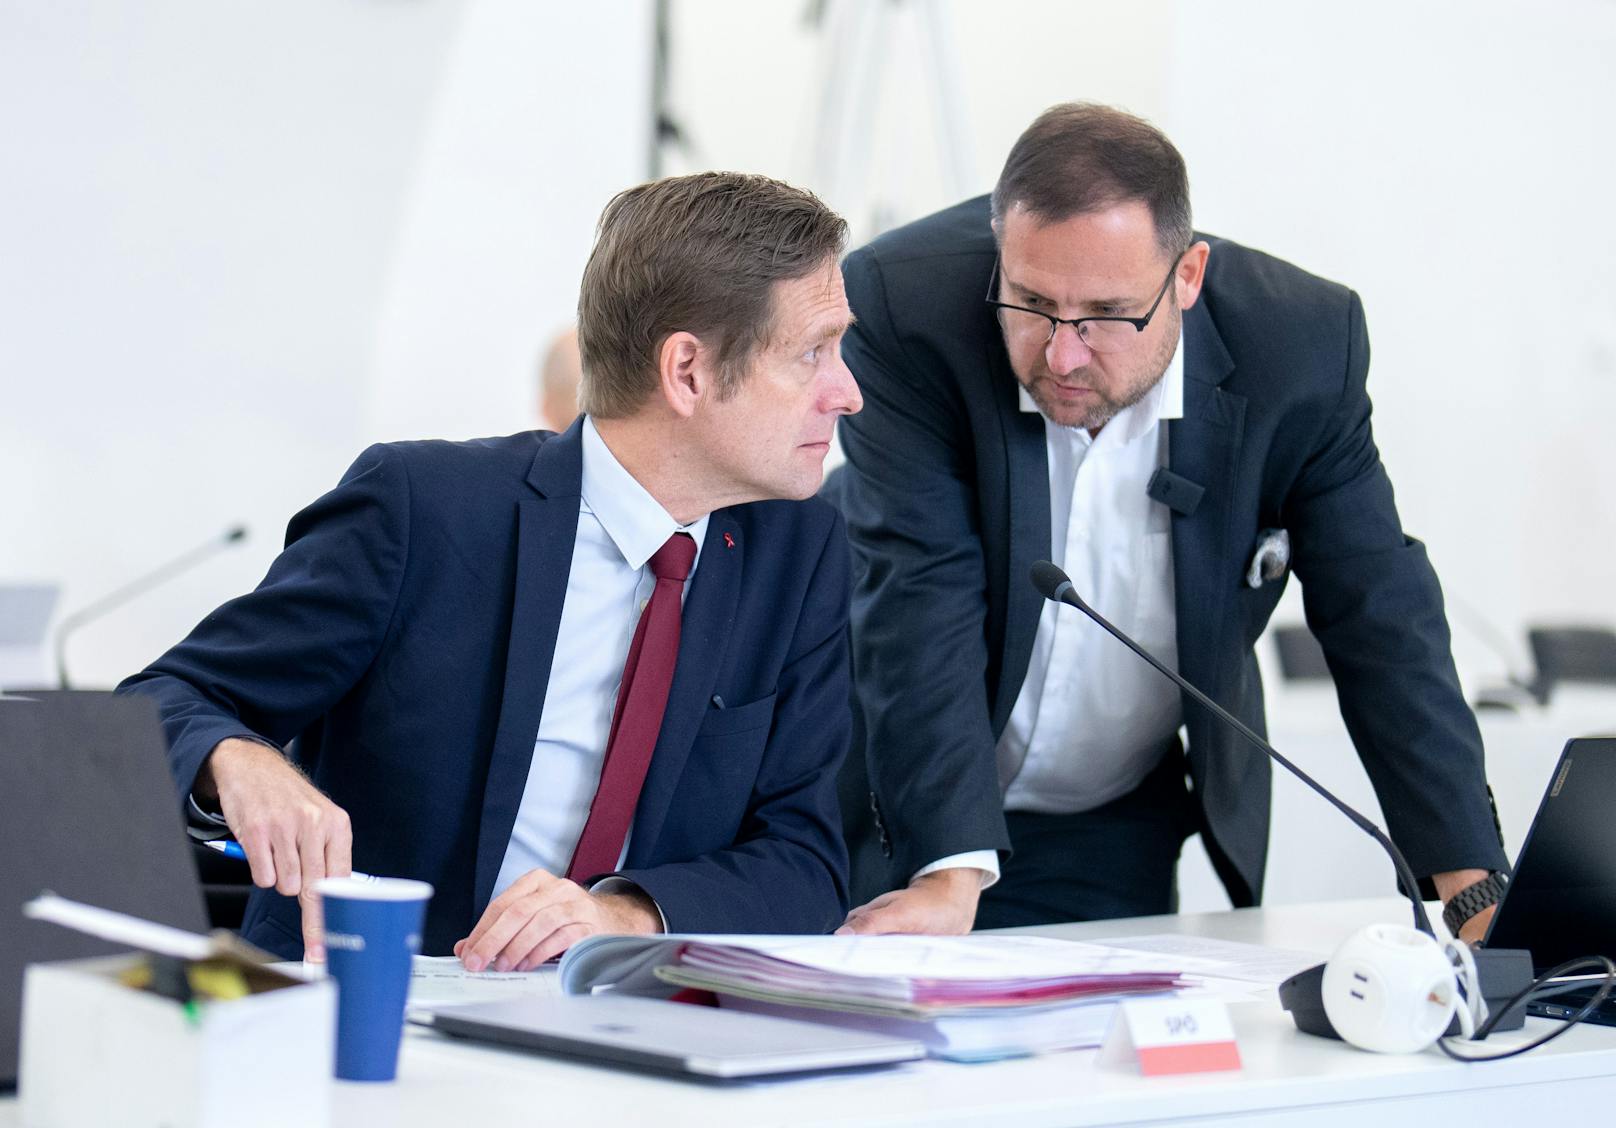 SPÖ-Mandatar Kai Jan Krainer und der freiheitliche Abgeordnete Christian Hafenecker